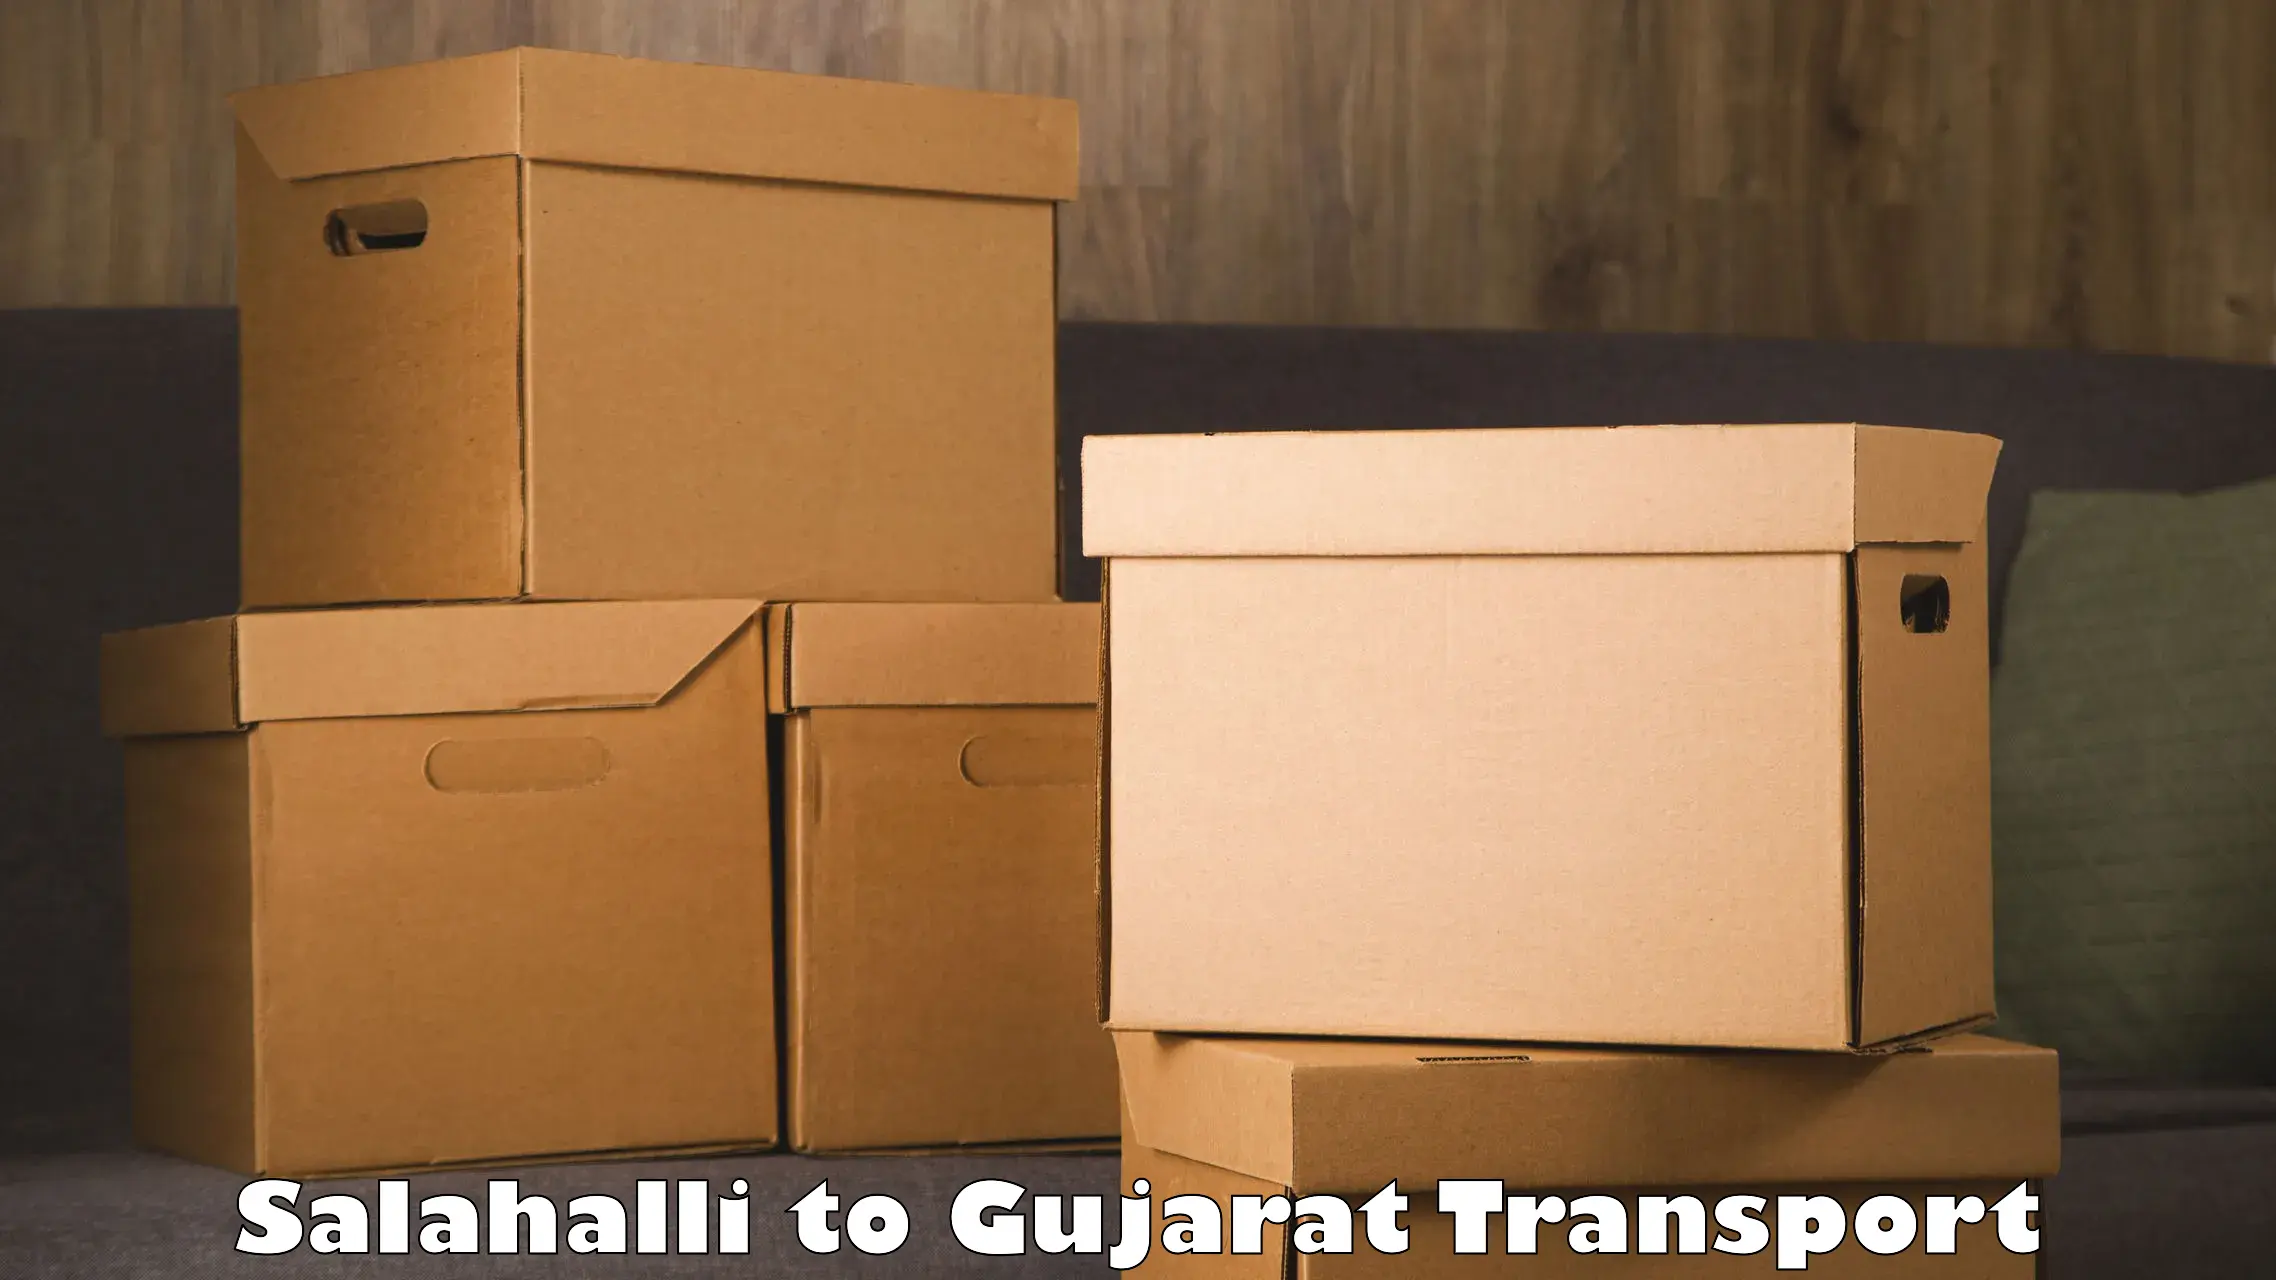 Daily transport service Salahalli to Surat